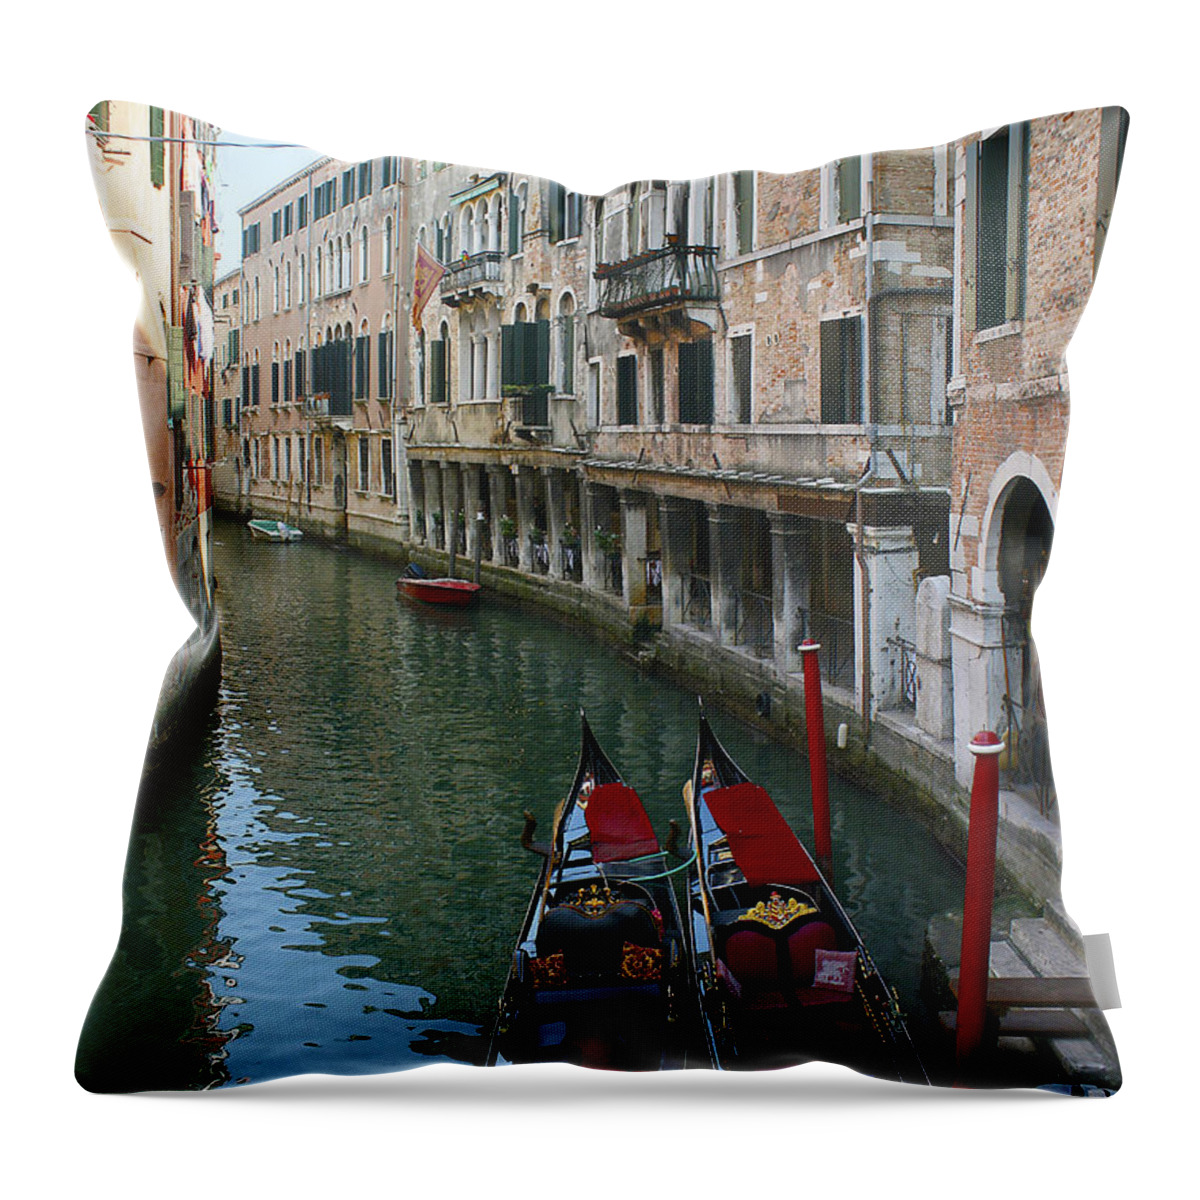 Europe Throw Pillow featuring the photograph Venice Gondolas 2 by Karen Zuk Rosenblatt